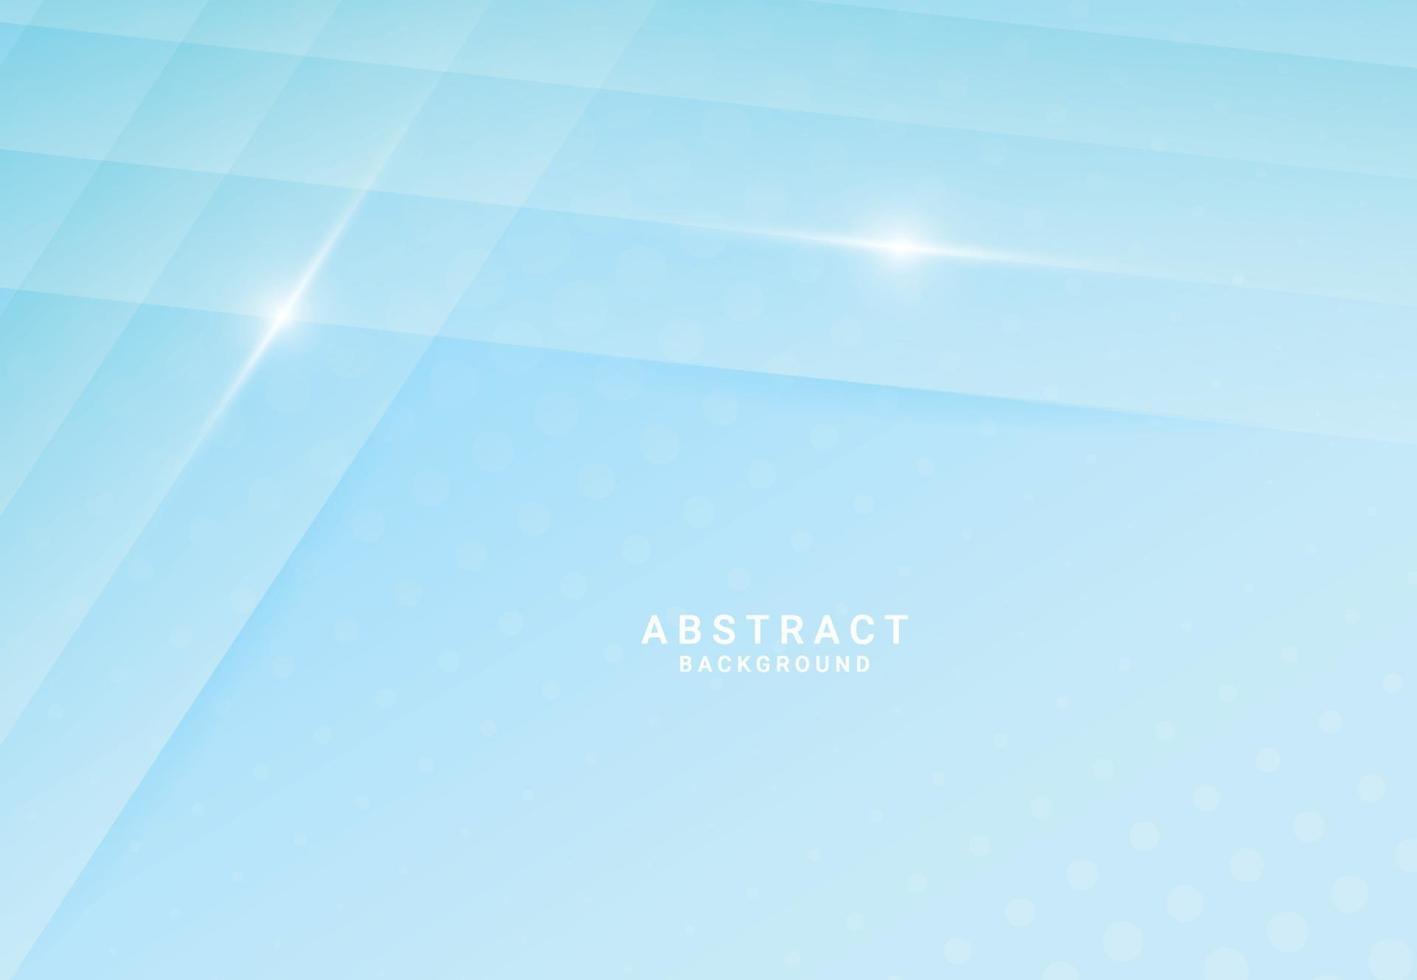 moderner blauer luxuriöser abstrakter Hintergrund mit 3D-Schichtstruktur für Website, Visitenkartendesign. Vektor-Illustration vektor